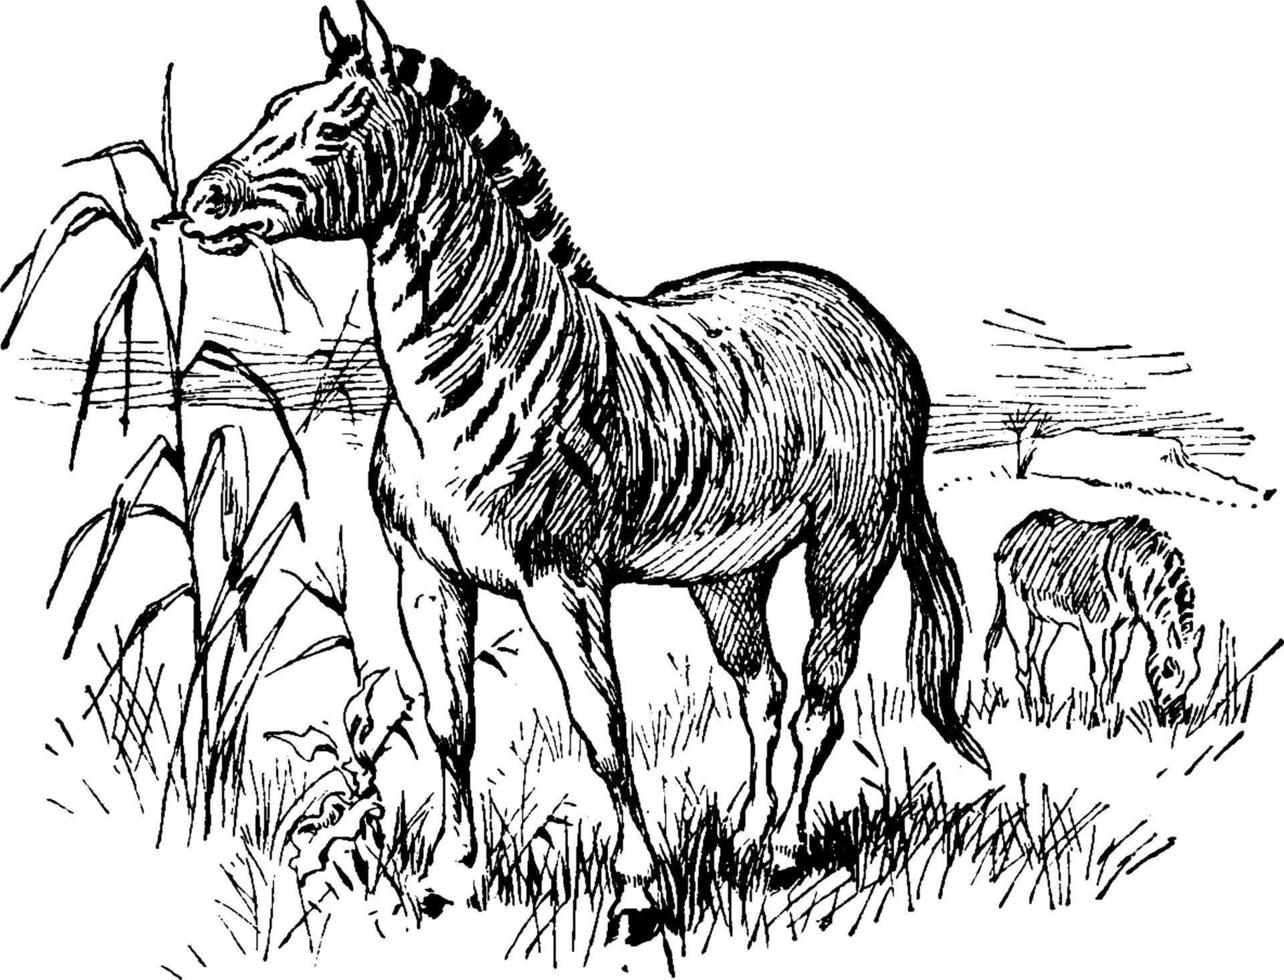 quagga, ilustración antigua. vector